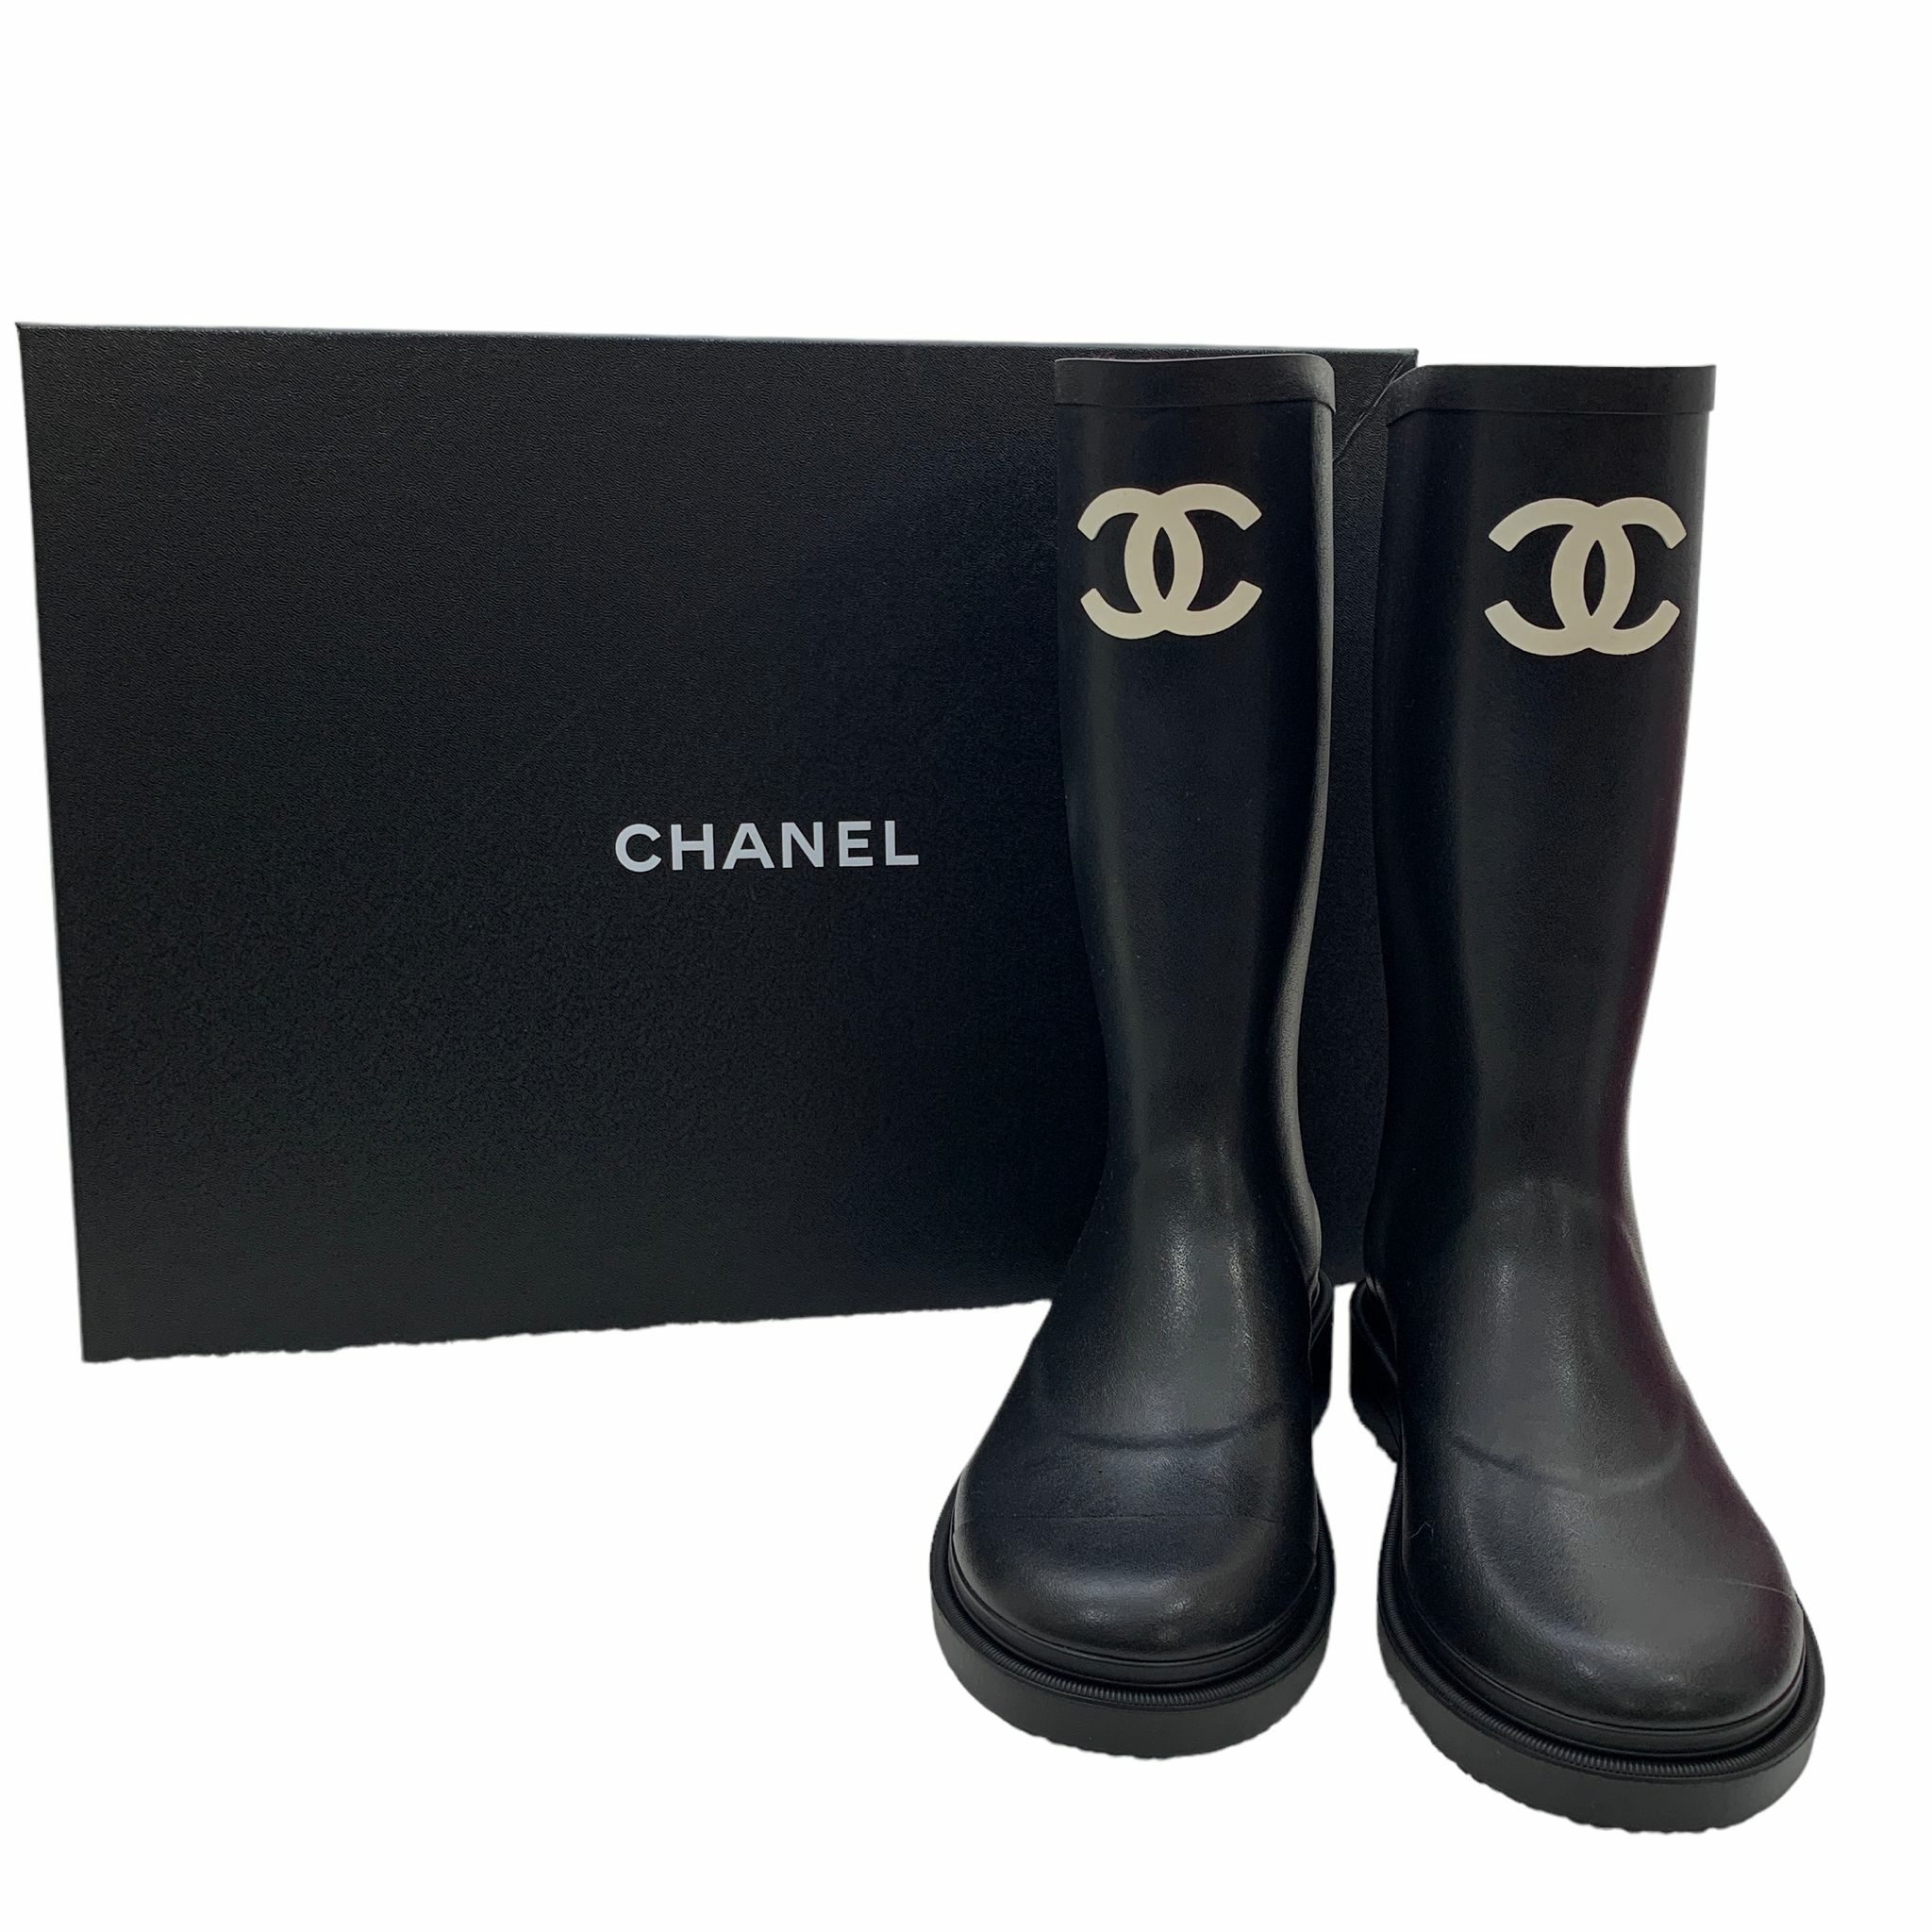 全新CHANEL水鞋/水靴36碼黑色橡膠G39620 Chanel Rubber Rain Boots